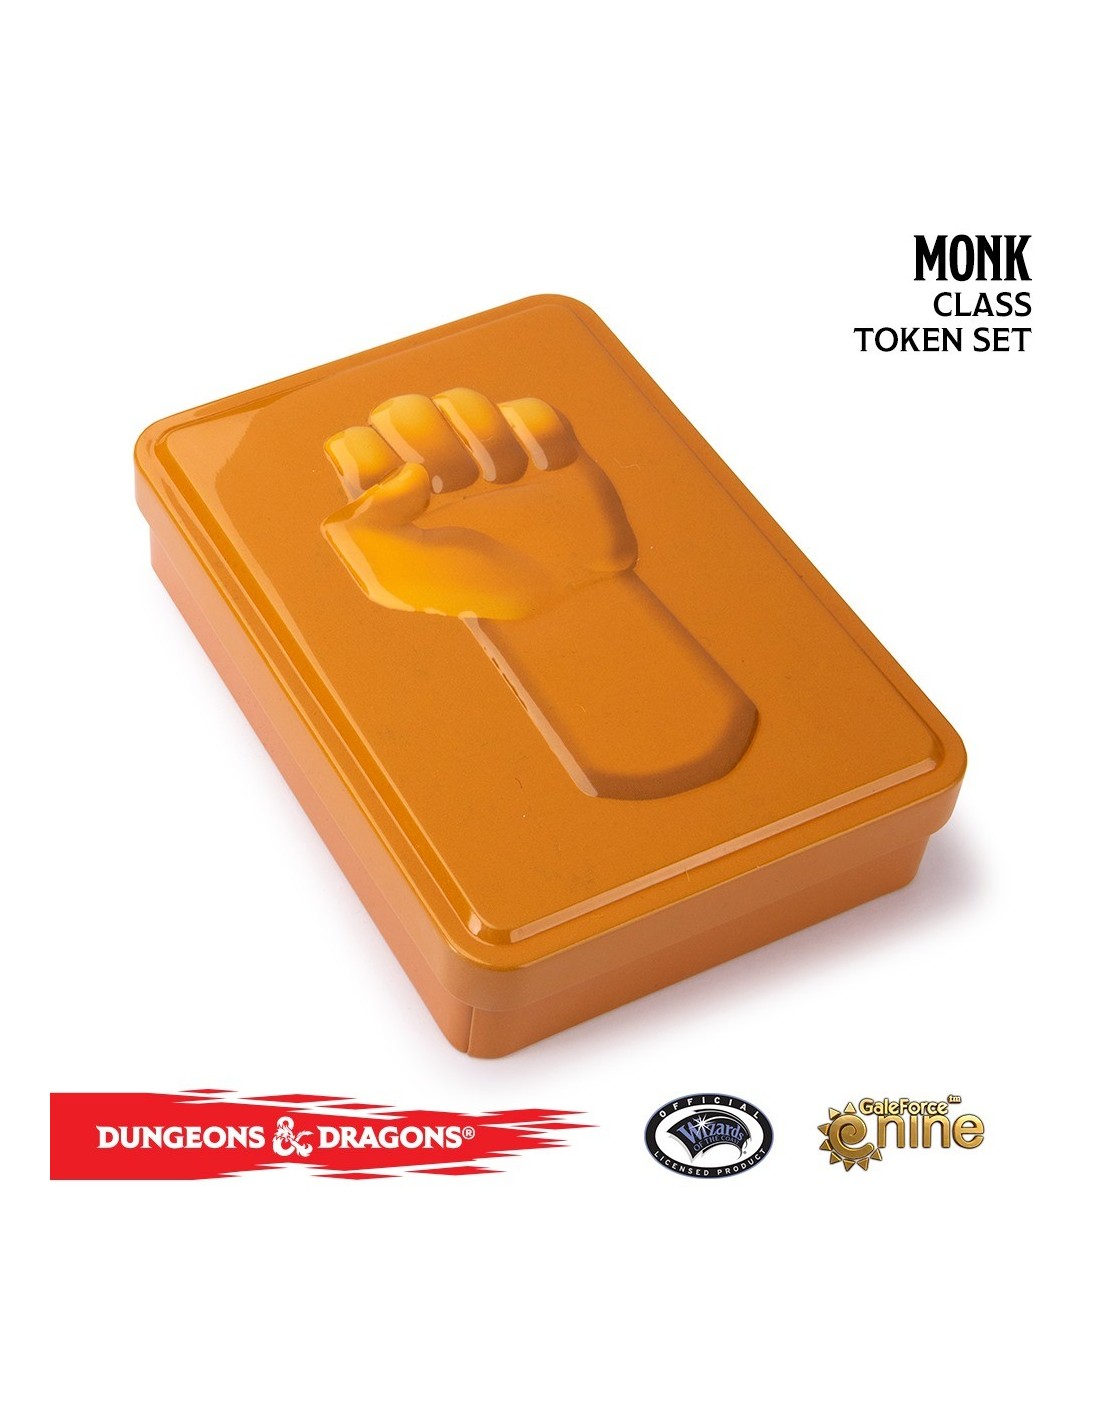 Monk Token Set - Dungeon & Dragons